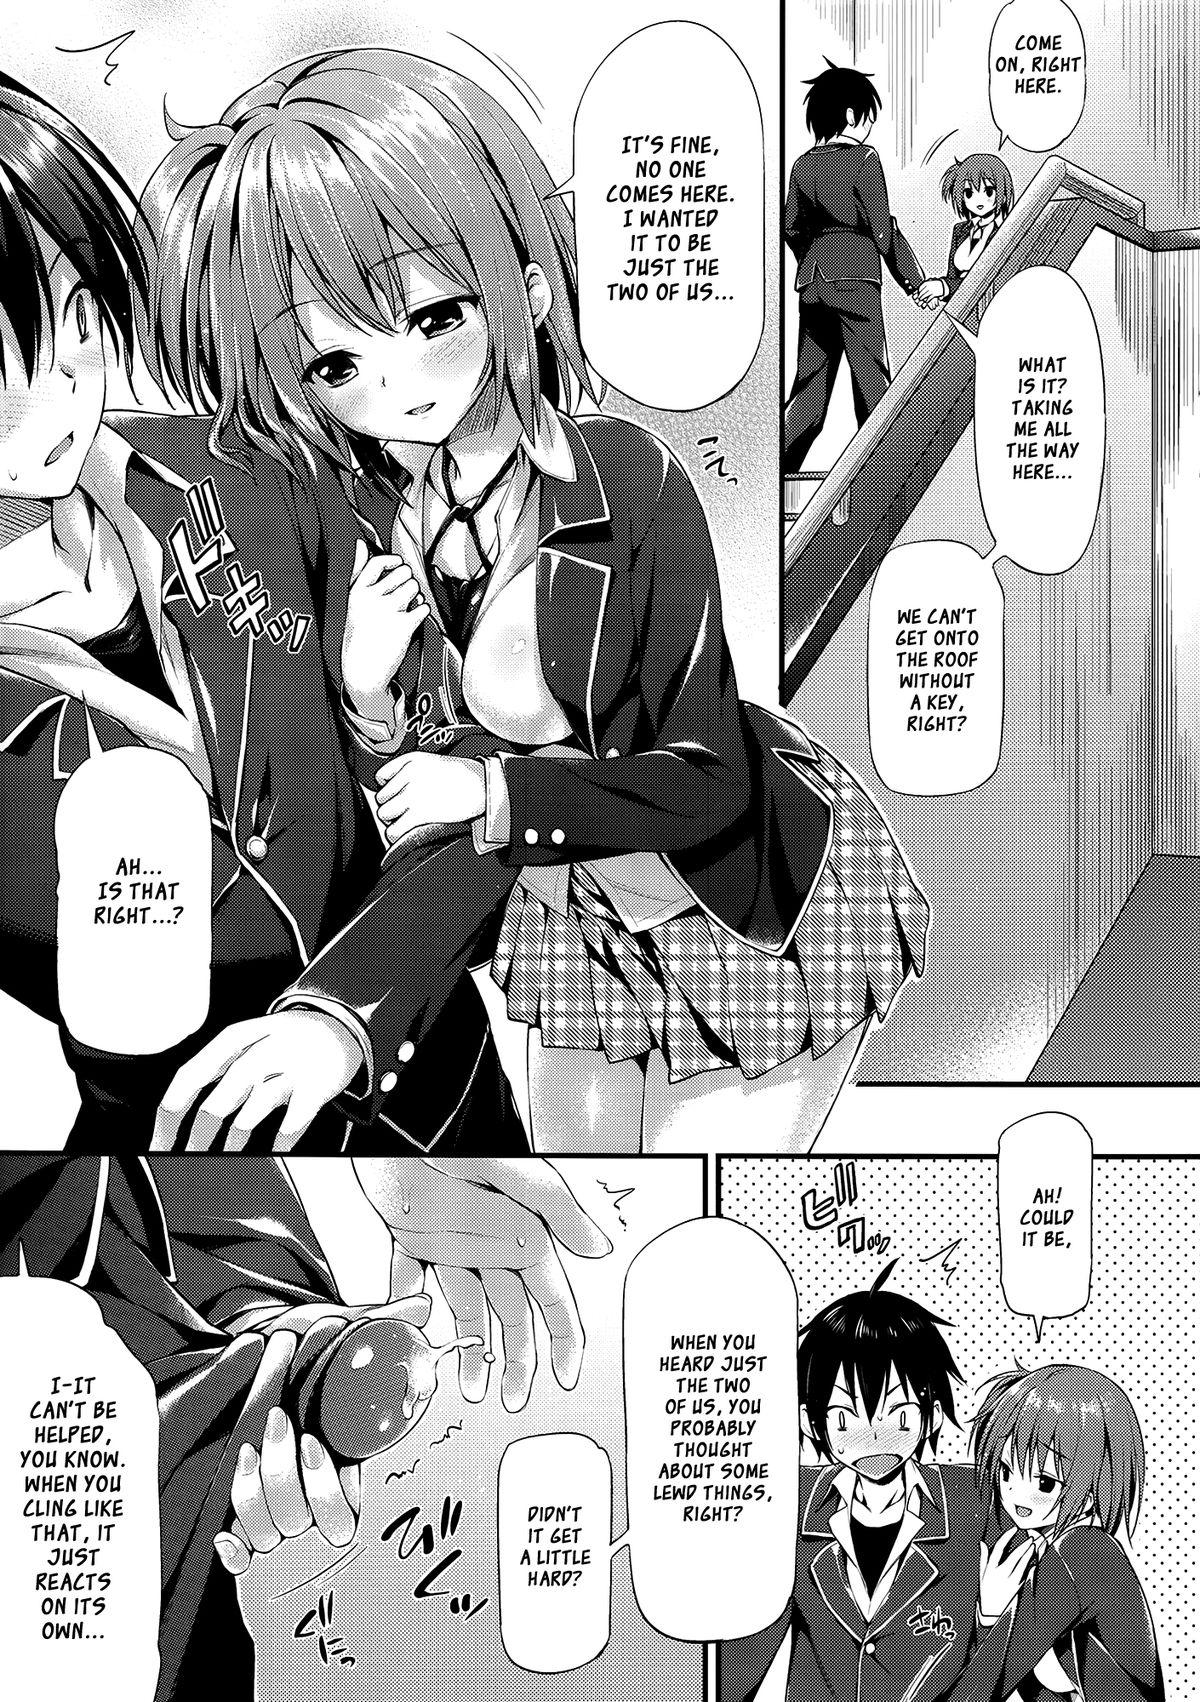 Tiny Titties Gahama-san Gentei - Yahari ore no seishun love come wa machigatteiru Amateur Sex - Page 3